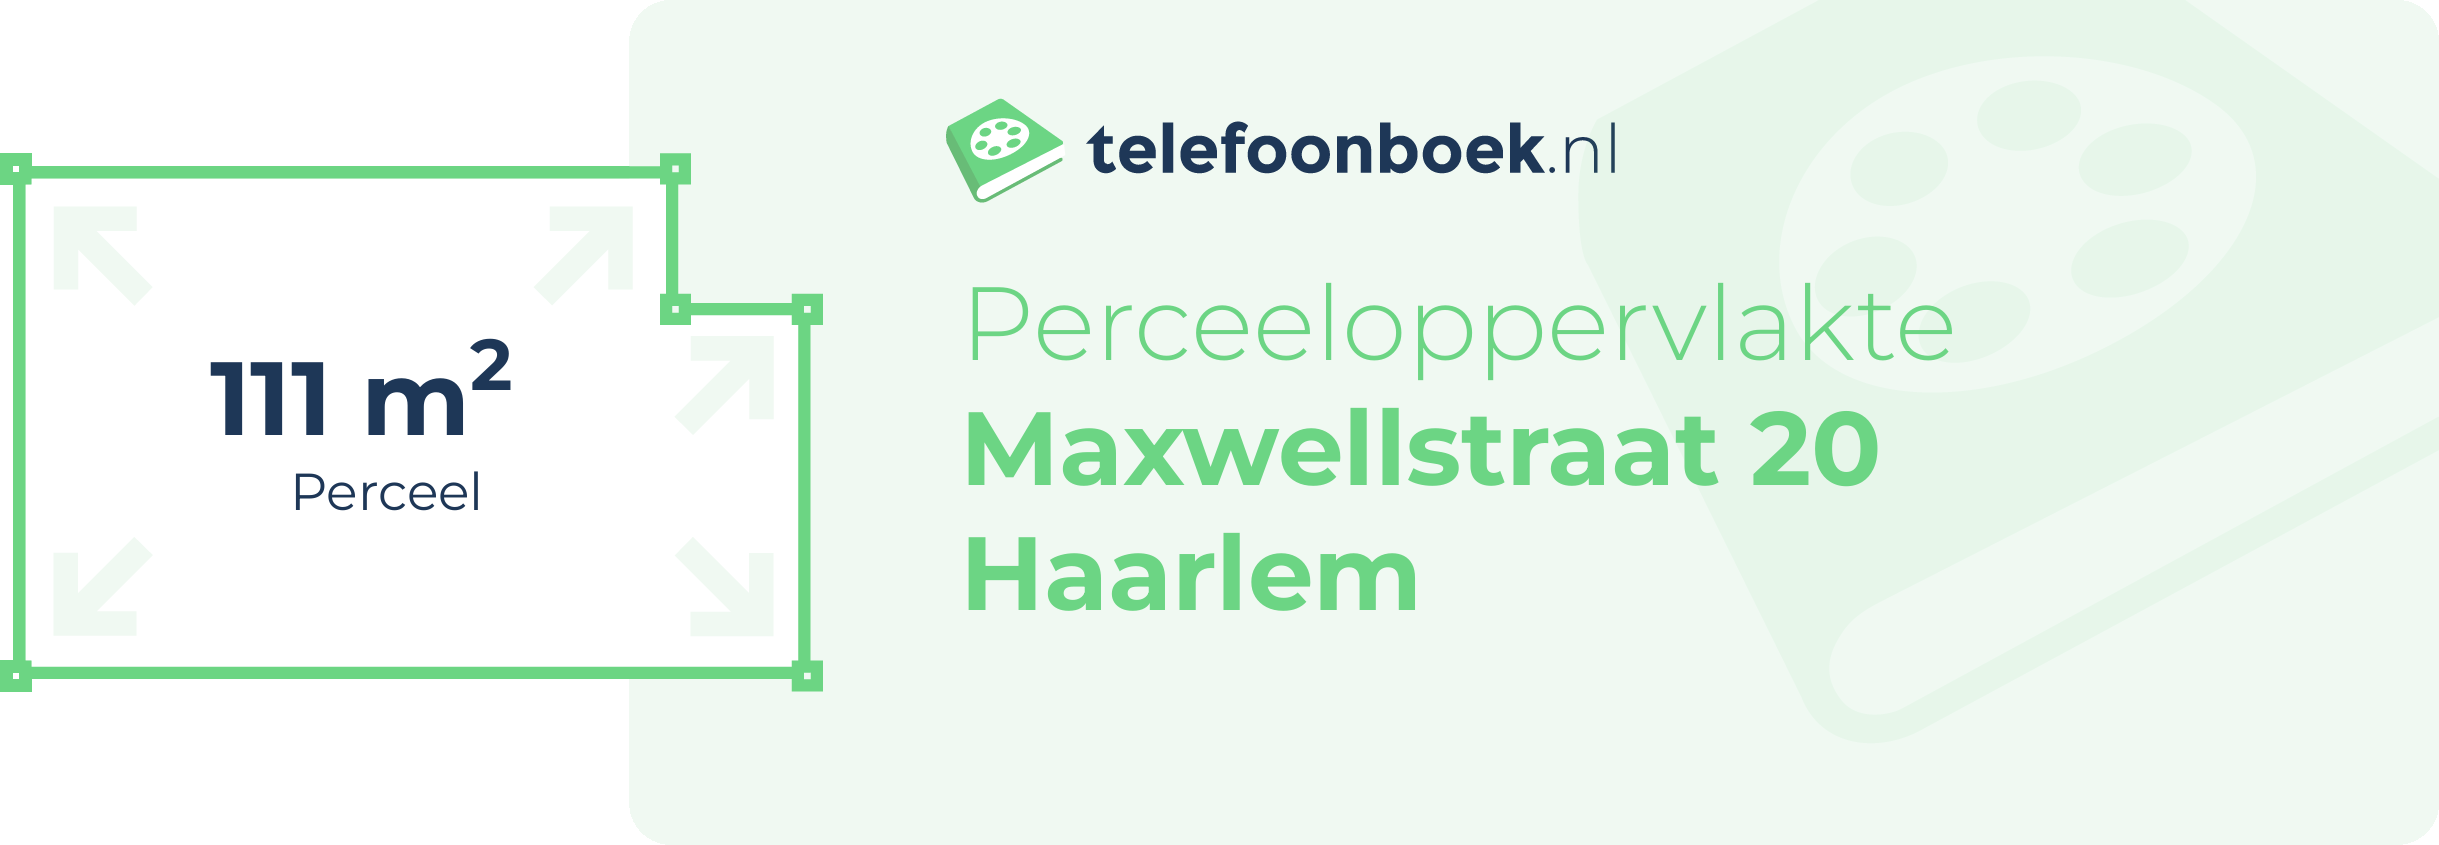 Perceeloppervlakte Maxwellstraat 20 Haarlem